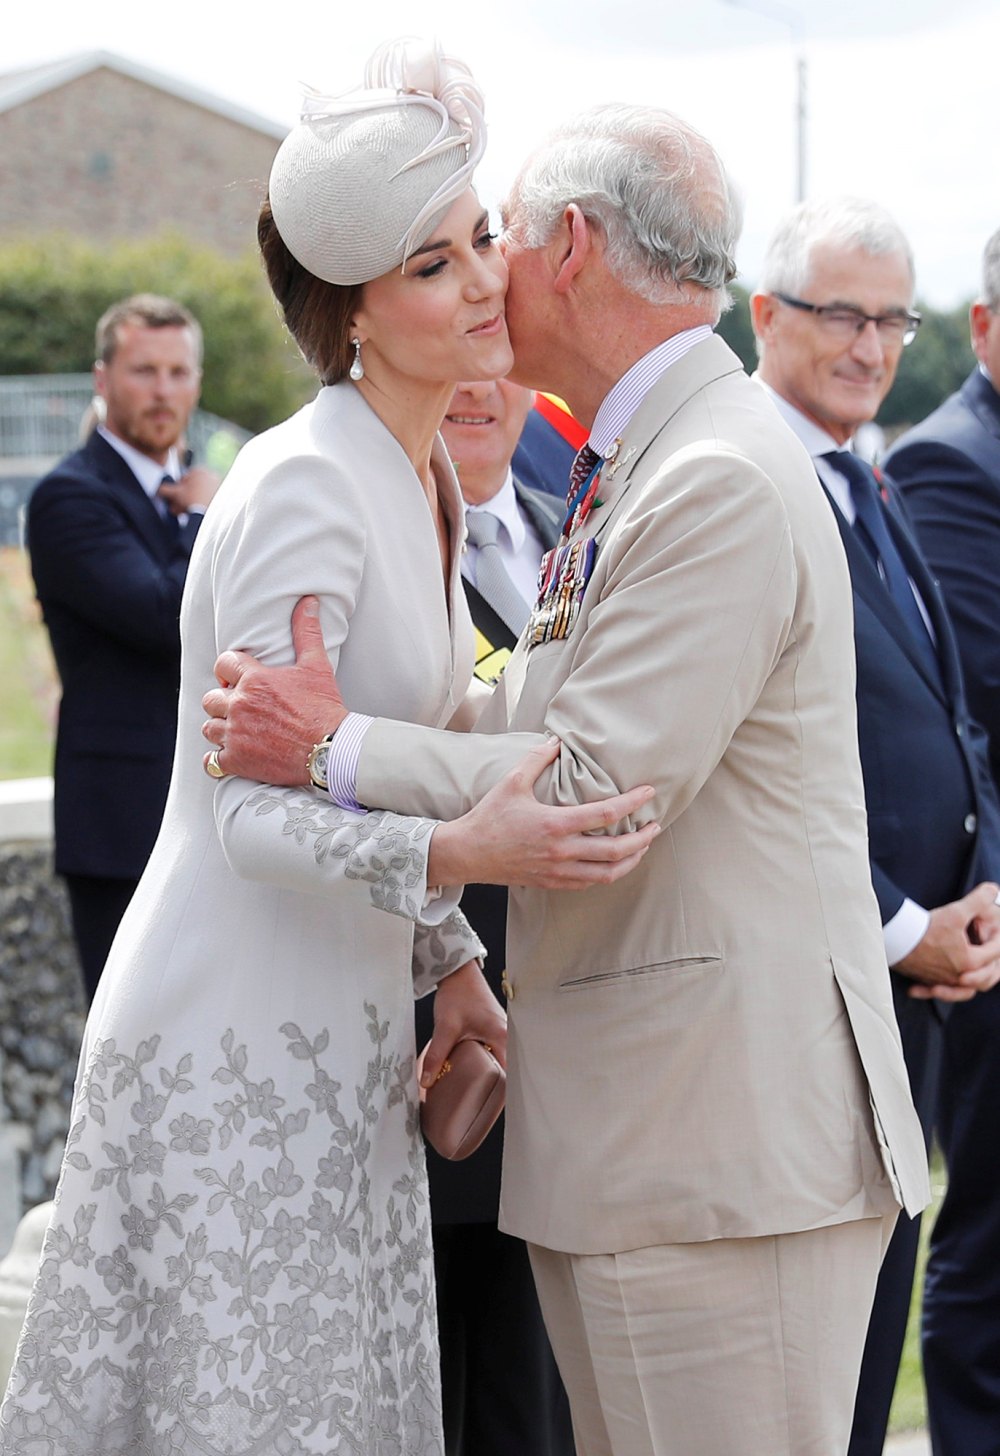 Berichten zufolge besuchte König Charles III. Kate Middleton während ihrer jeweiligen Krankenhausaufenthalte